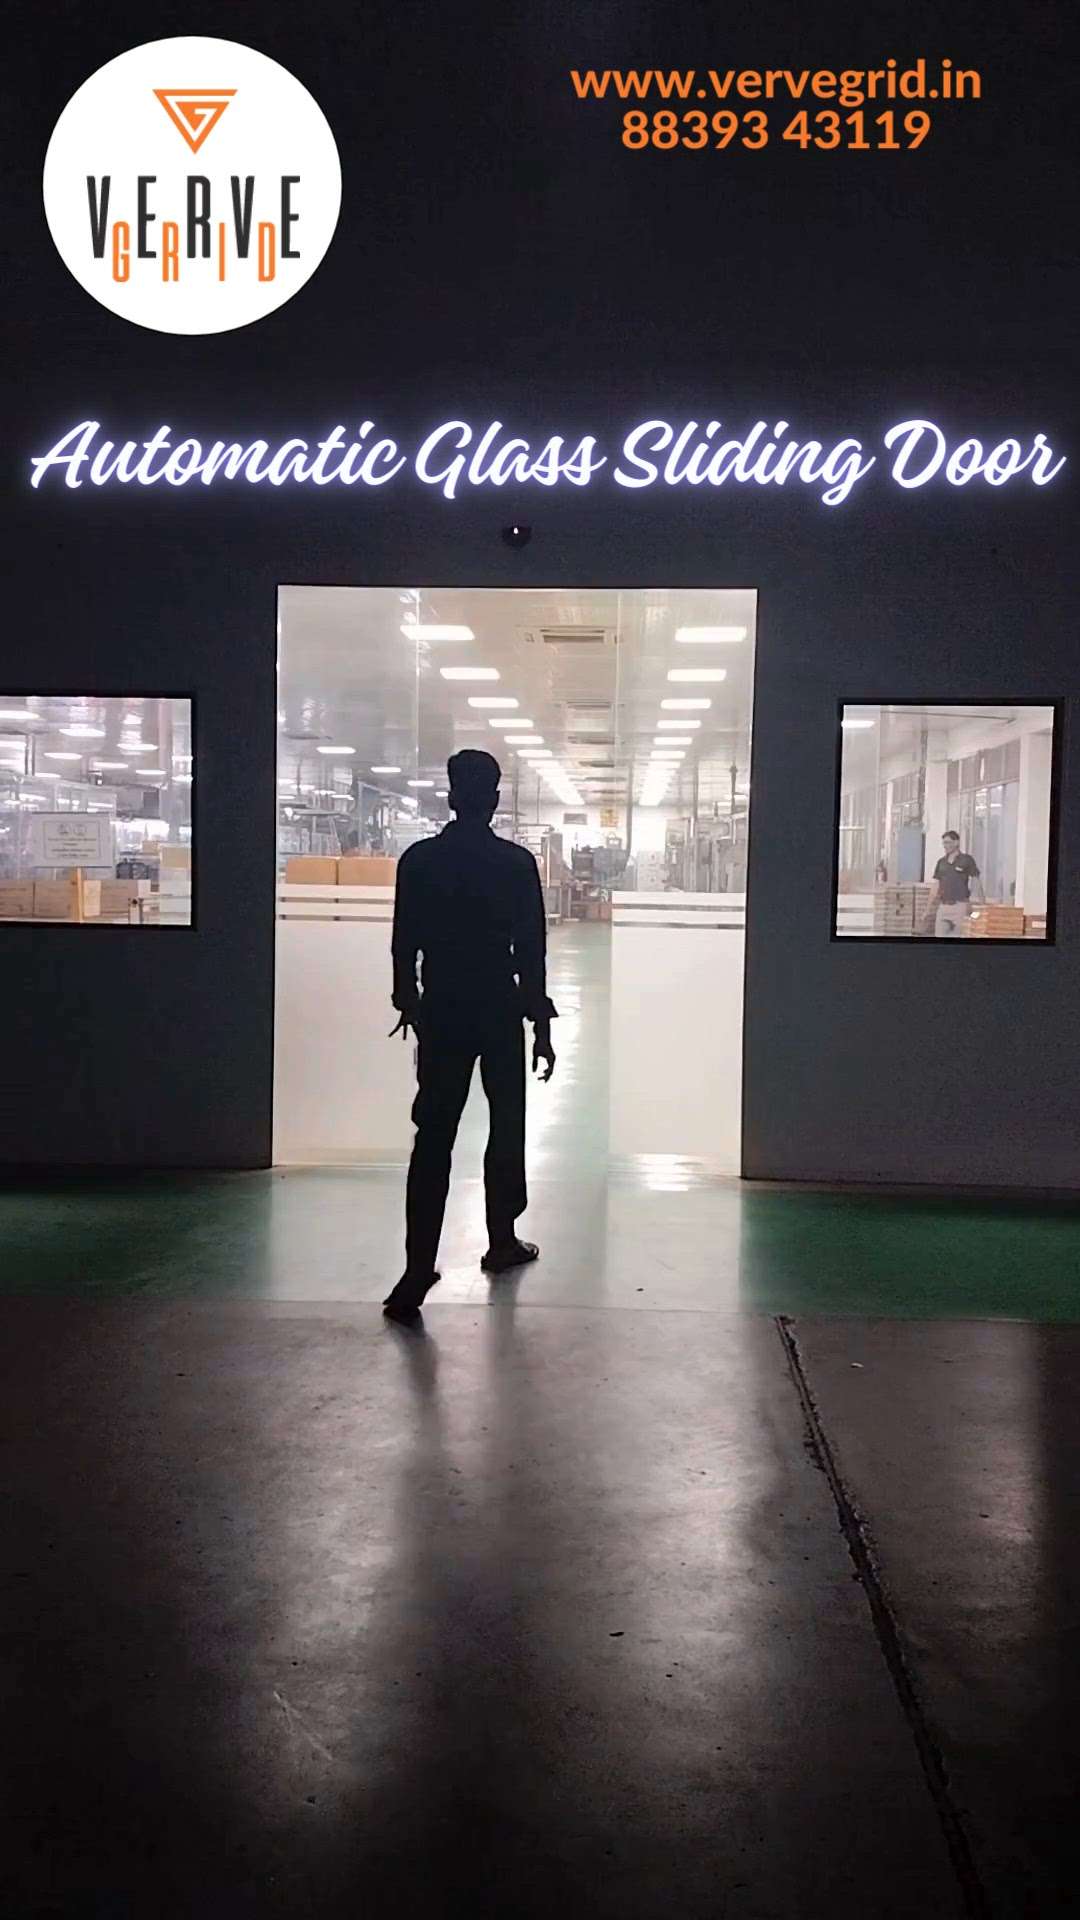 #automaticglass #automaticglassdoors #automaticsensordoor#automaaticslidingglassdoor